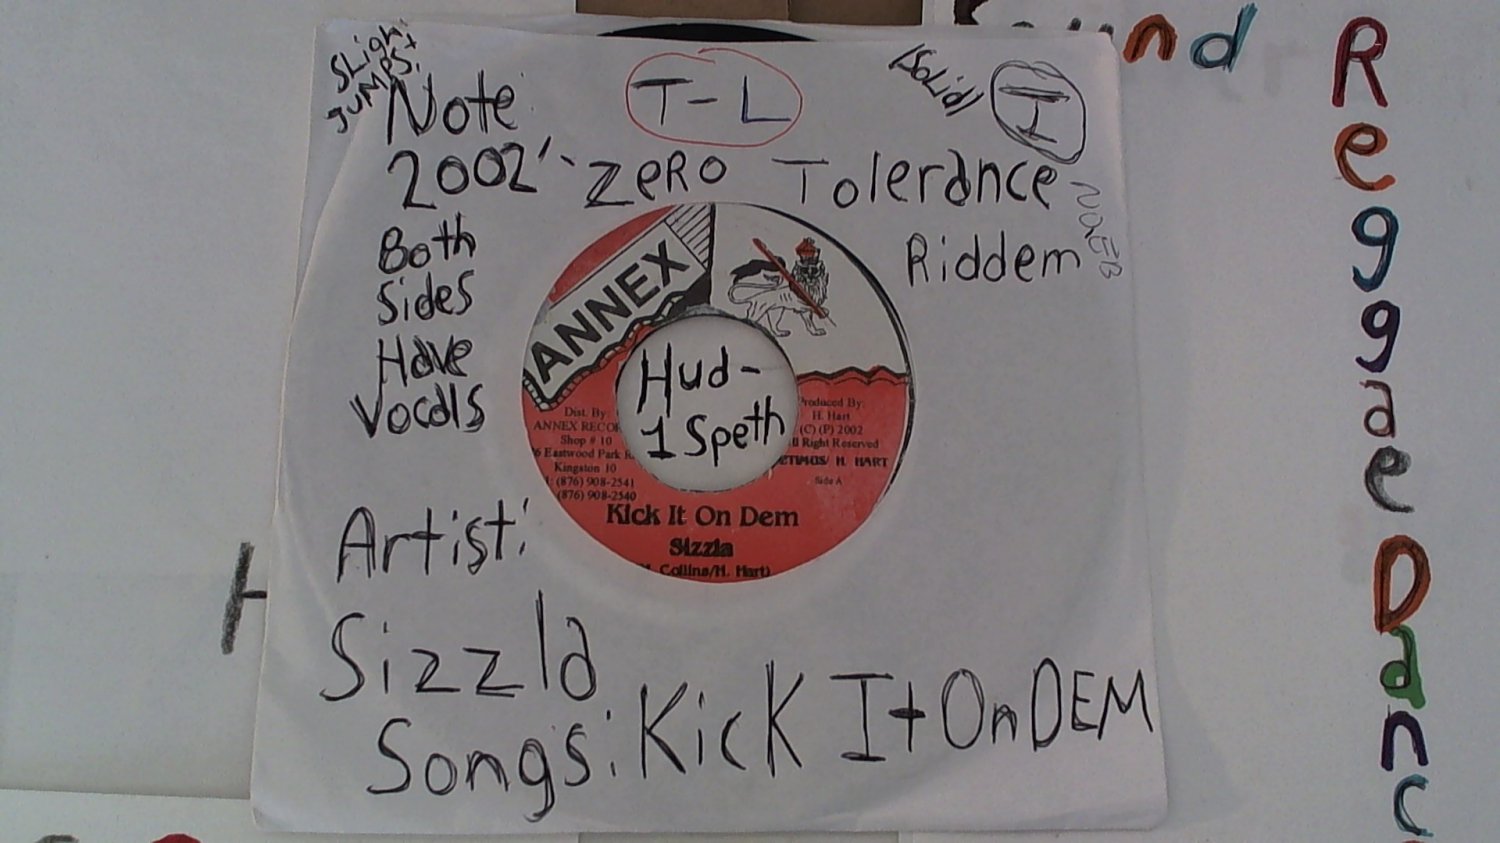 artiste: Sizzla side A: Kick It On Dem / B: Zero Tolerance year: 2002' (Used) 7"